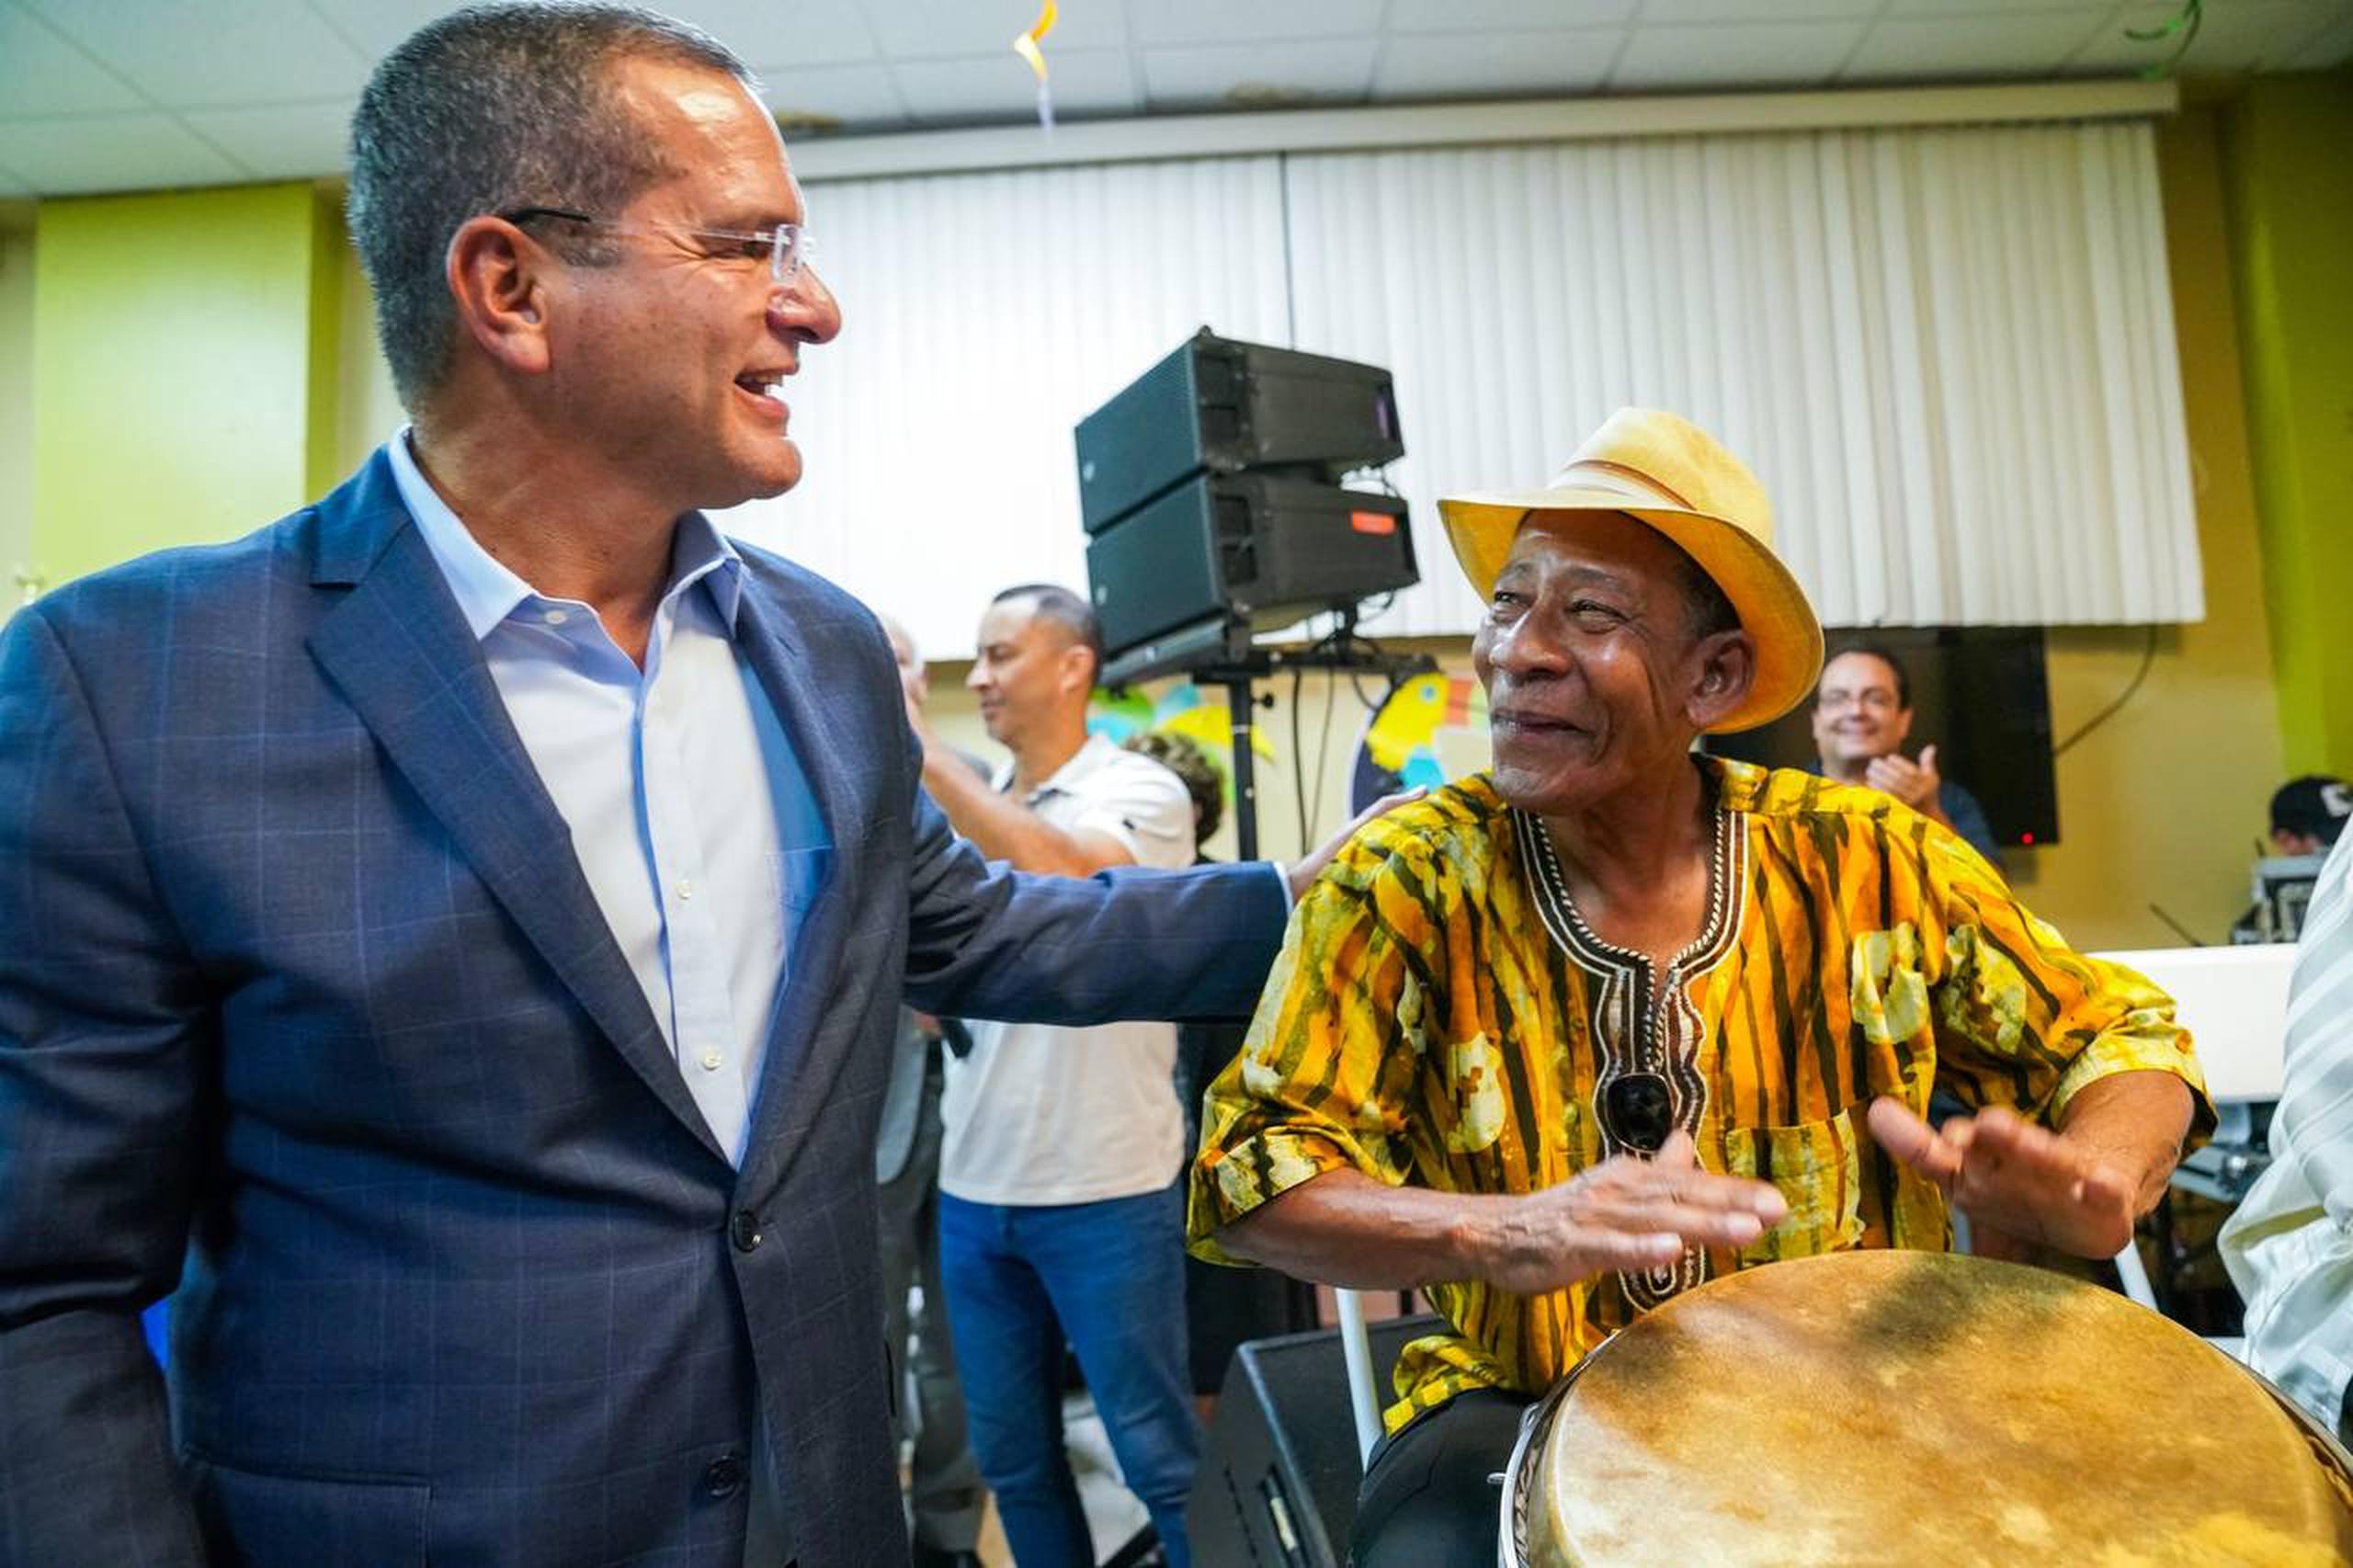 El gobernador Pedro R. Pierluisi saluda a un músico de la agrupación de los Hermanos Cepeda, durante una actividad de adultos mayores en Bayamón.